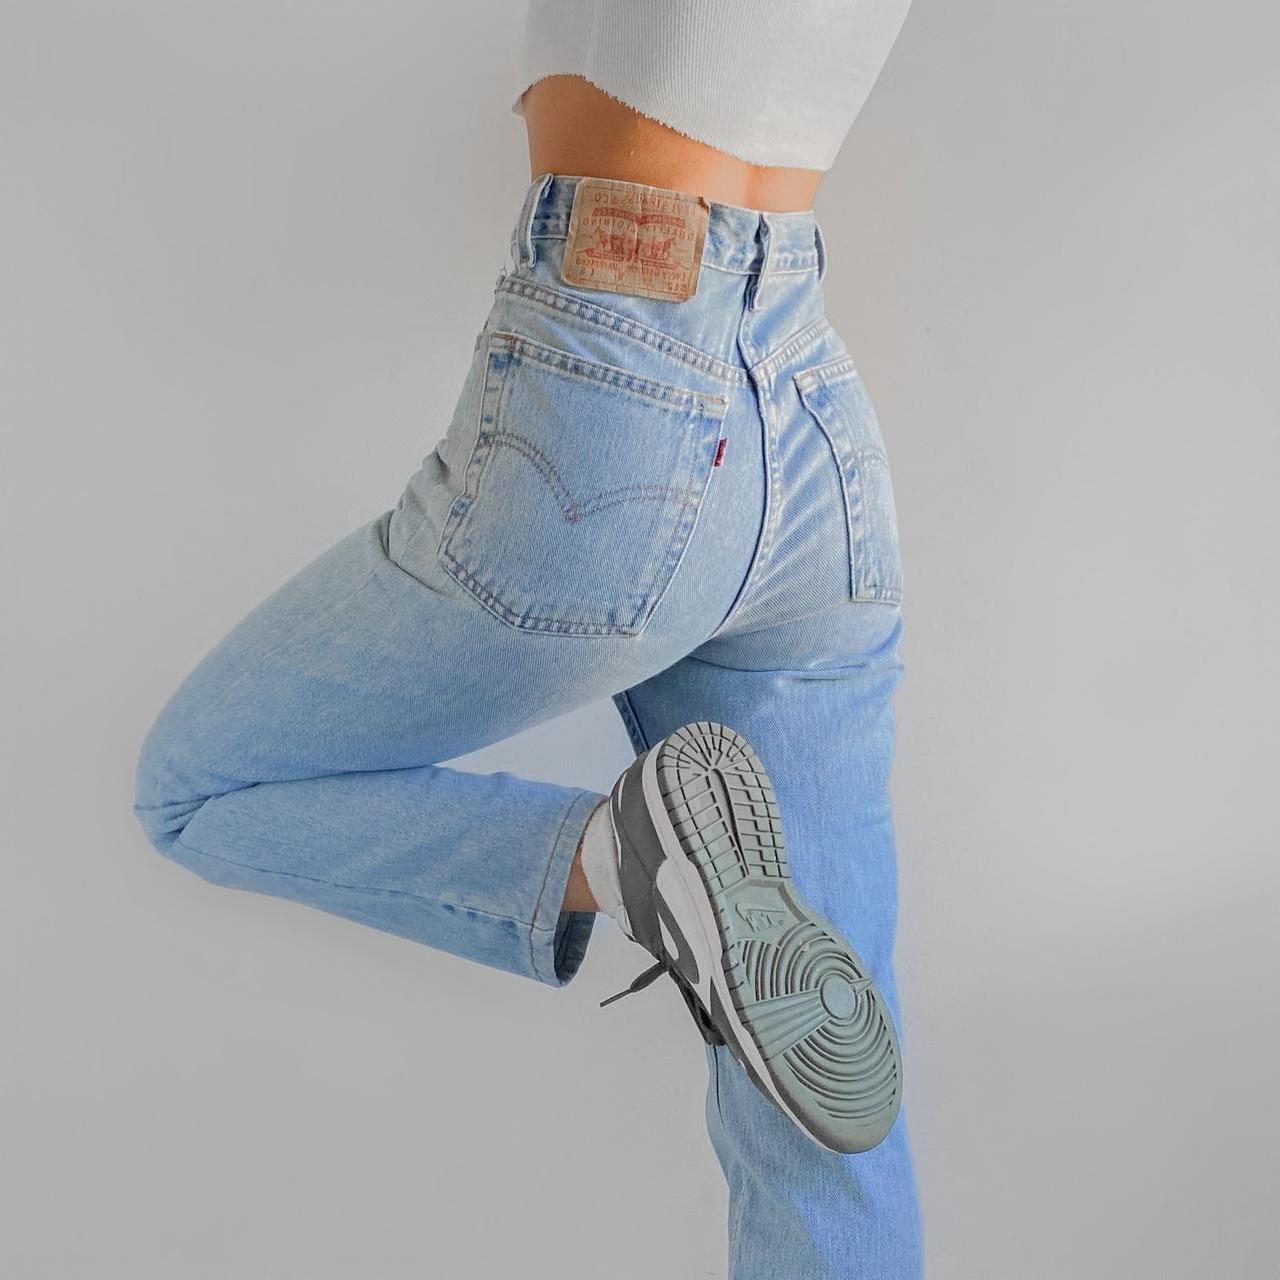 Levi's Women's Grey Jeans | Depop